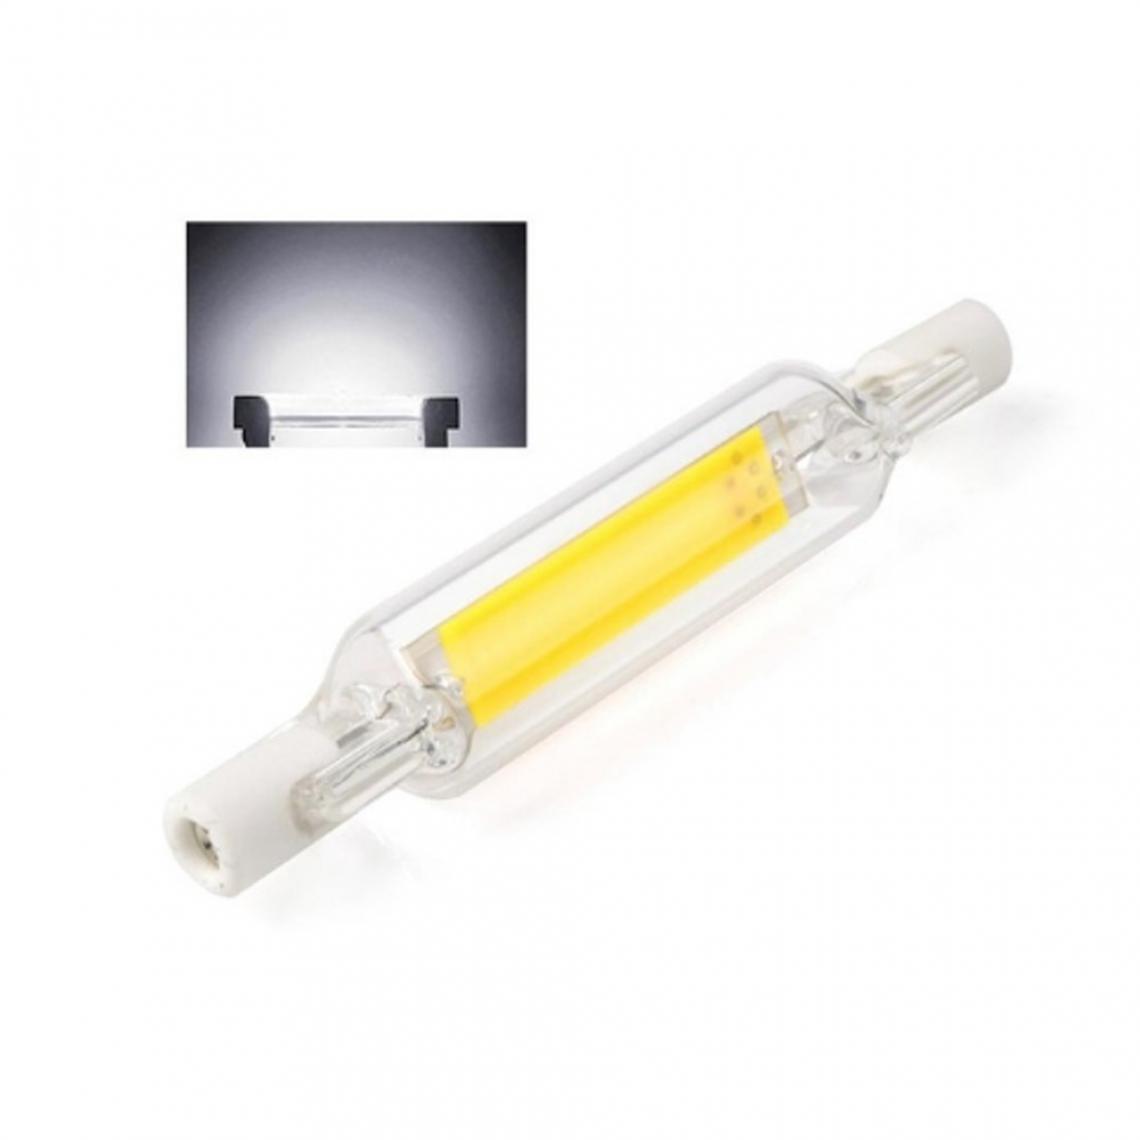 Wewoo - Tube en verre d'ampoule LED R7S 5W pour remplacer l'ampoule halogènelongueur de la lampe 78 mmAC 110v blanc froid - Tubes et néons